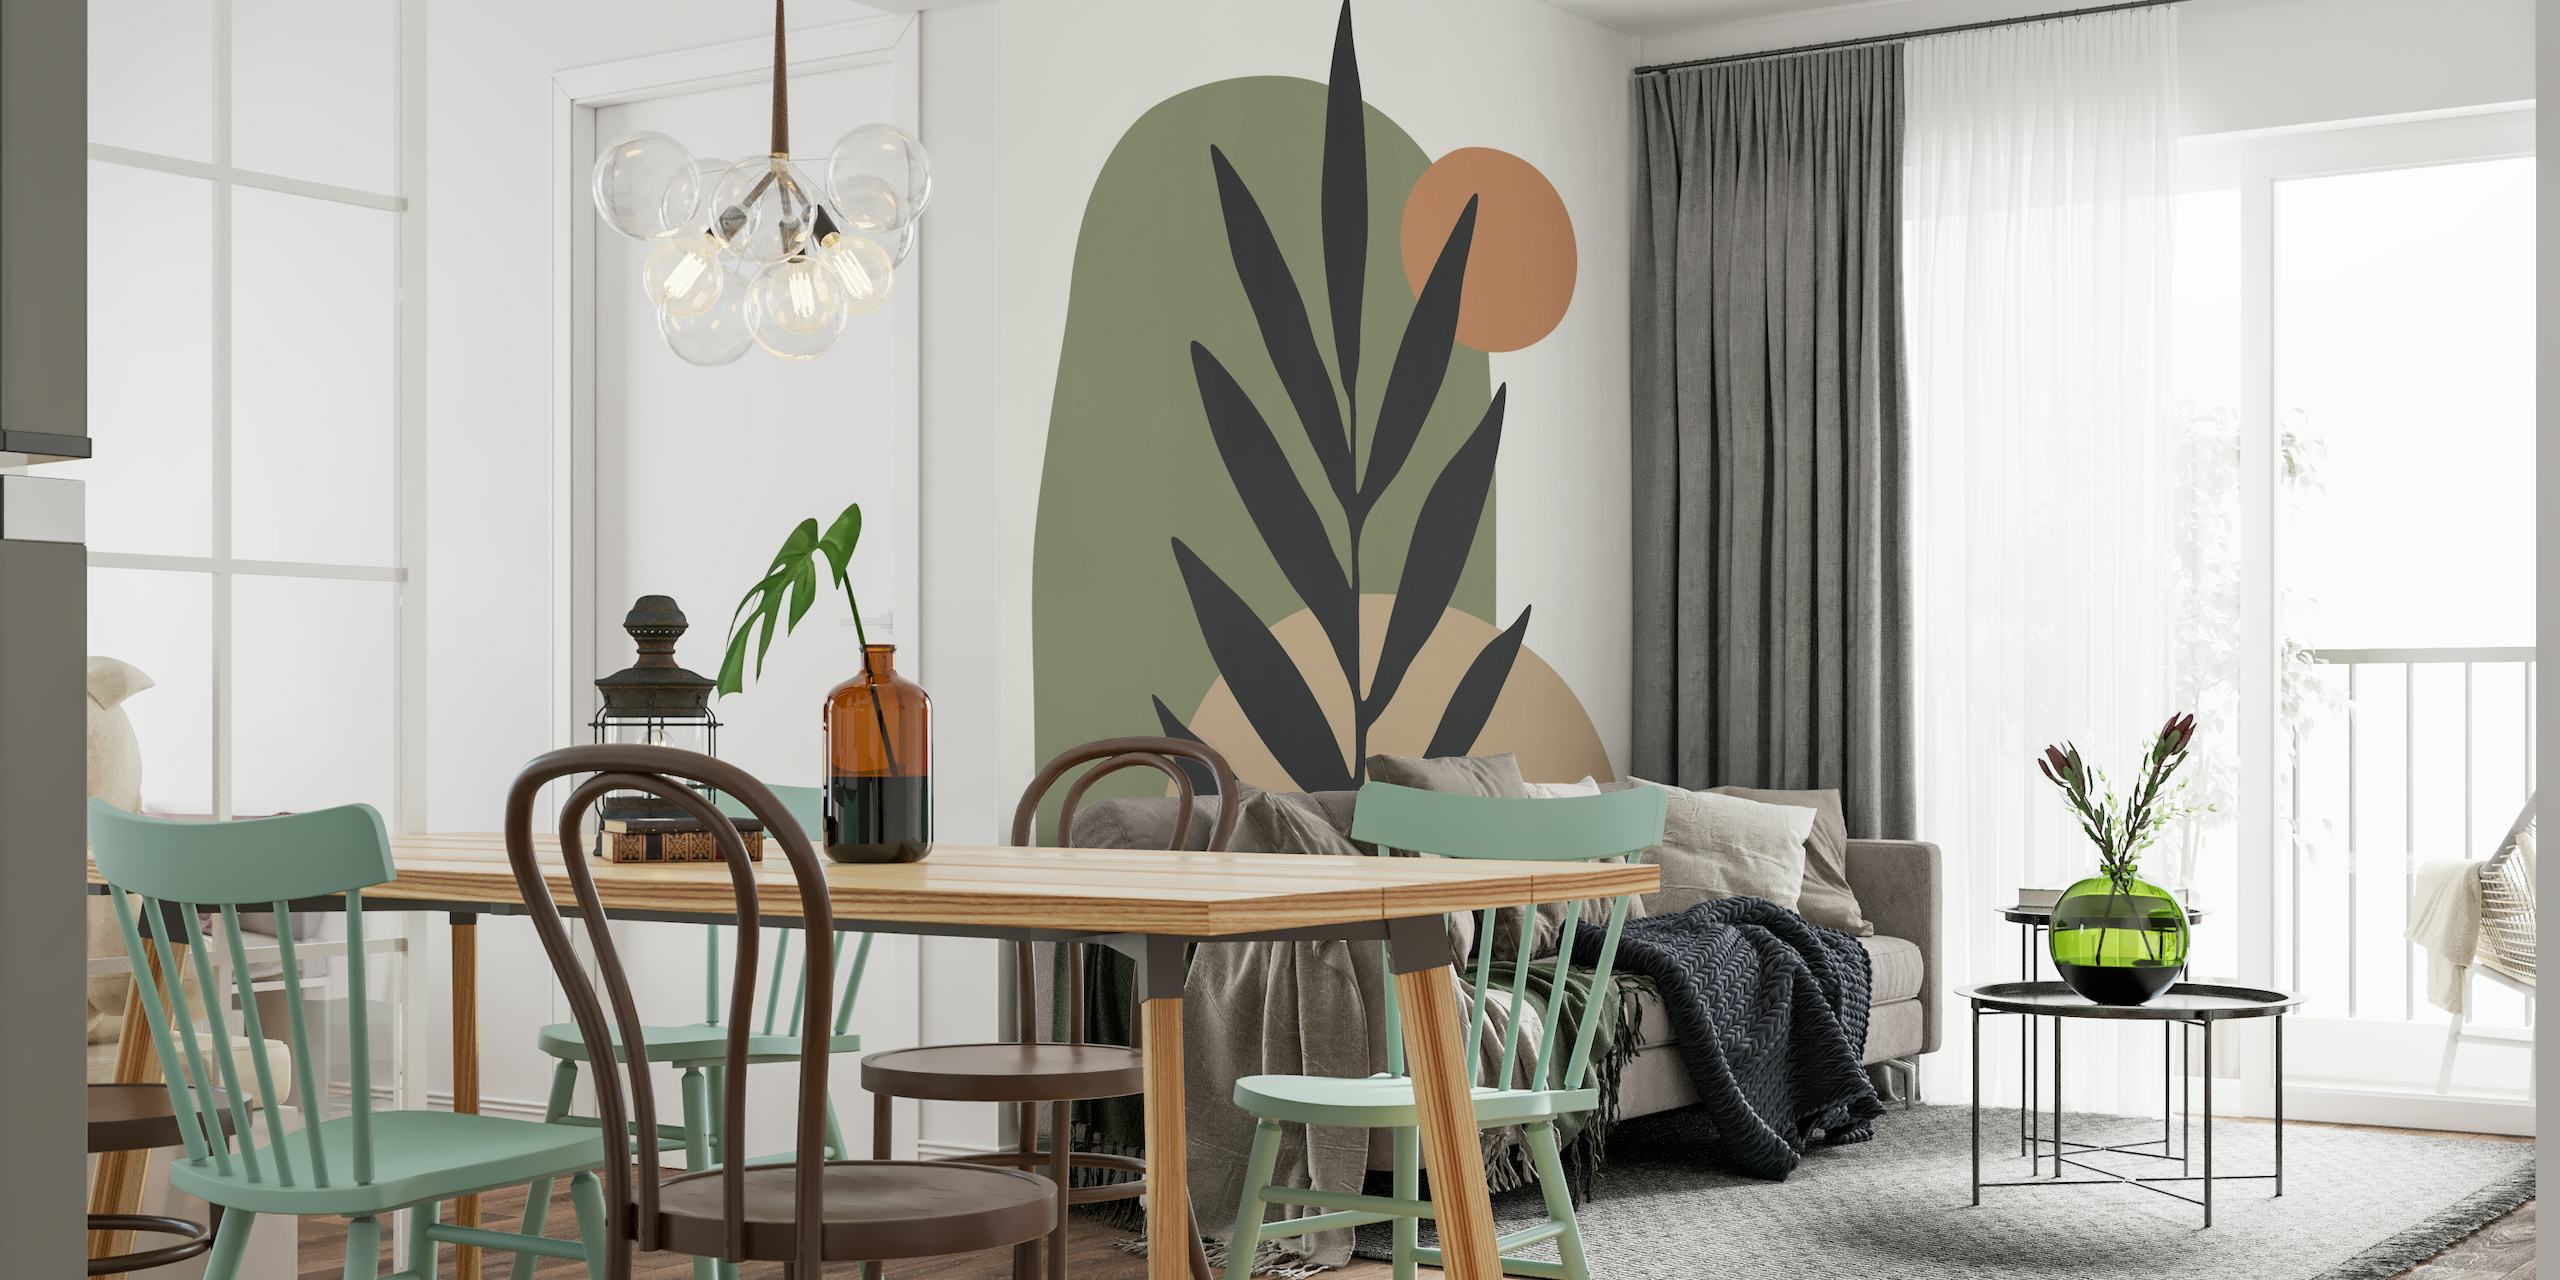 Abstrakt botanisk vægmaleri med minimalistisk plantesilhuet med jordfarvede former